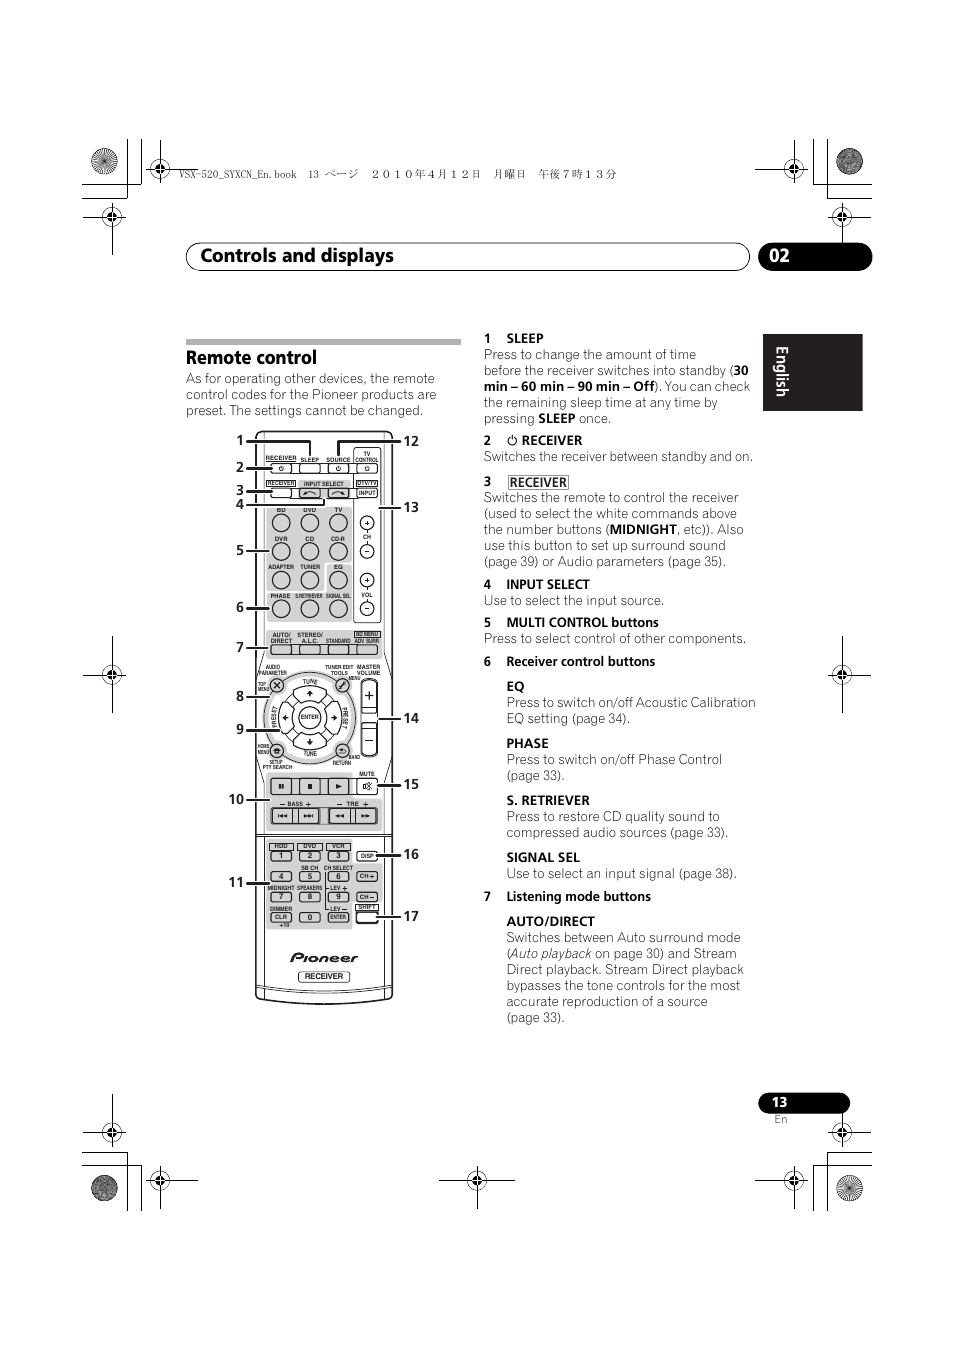 Remote control, Controls and displays 02, English français español